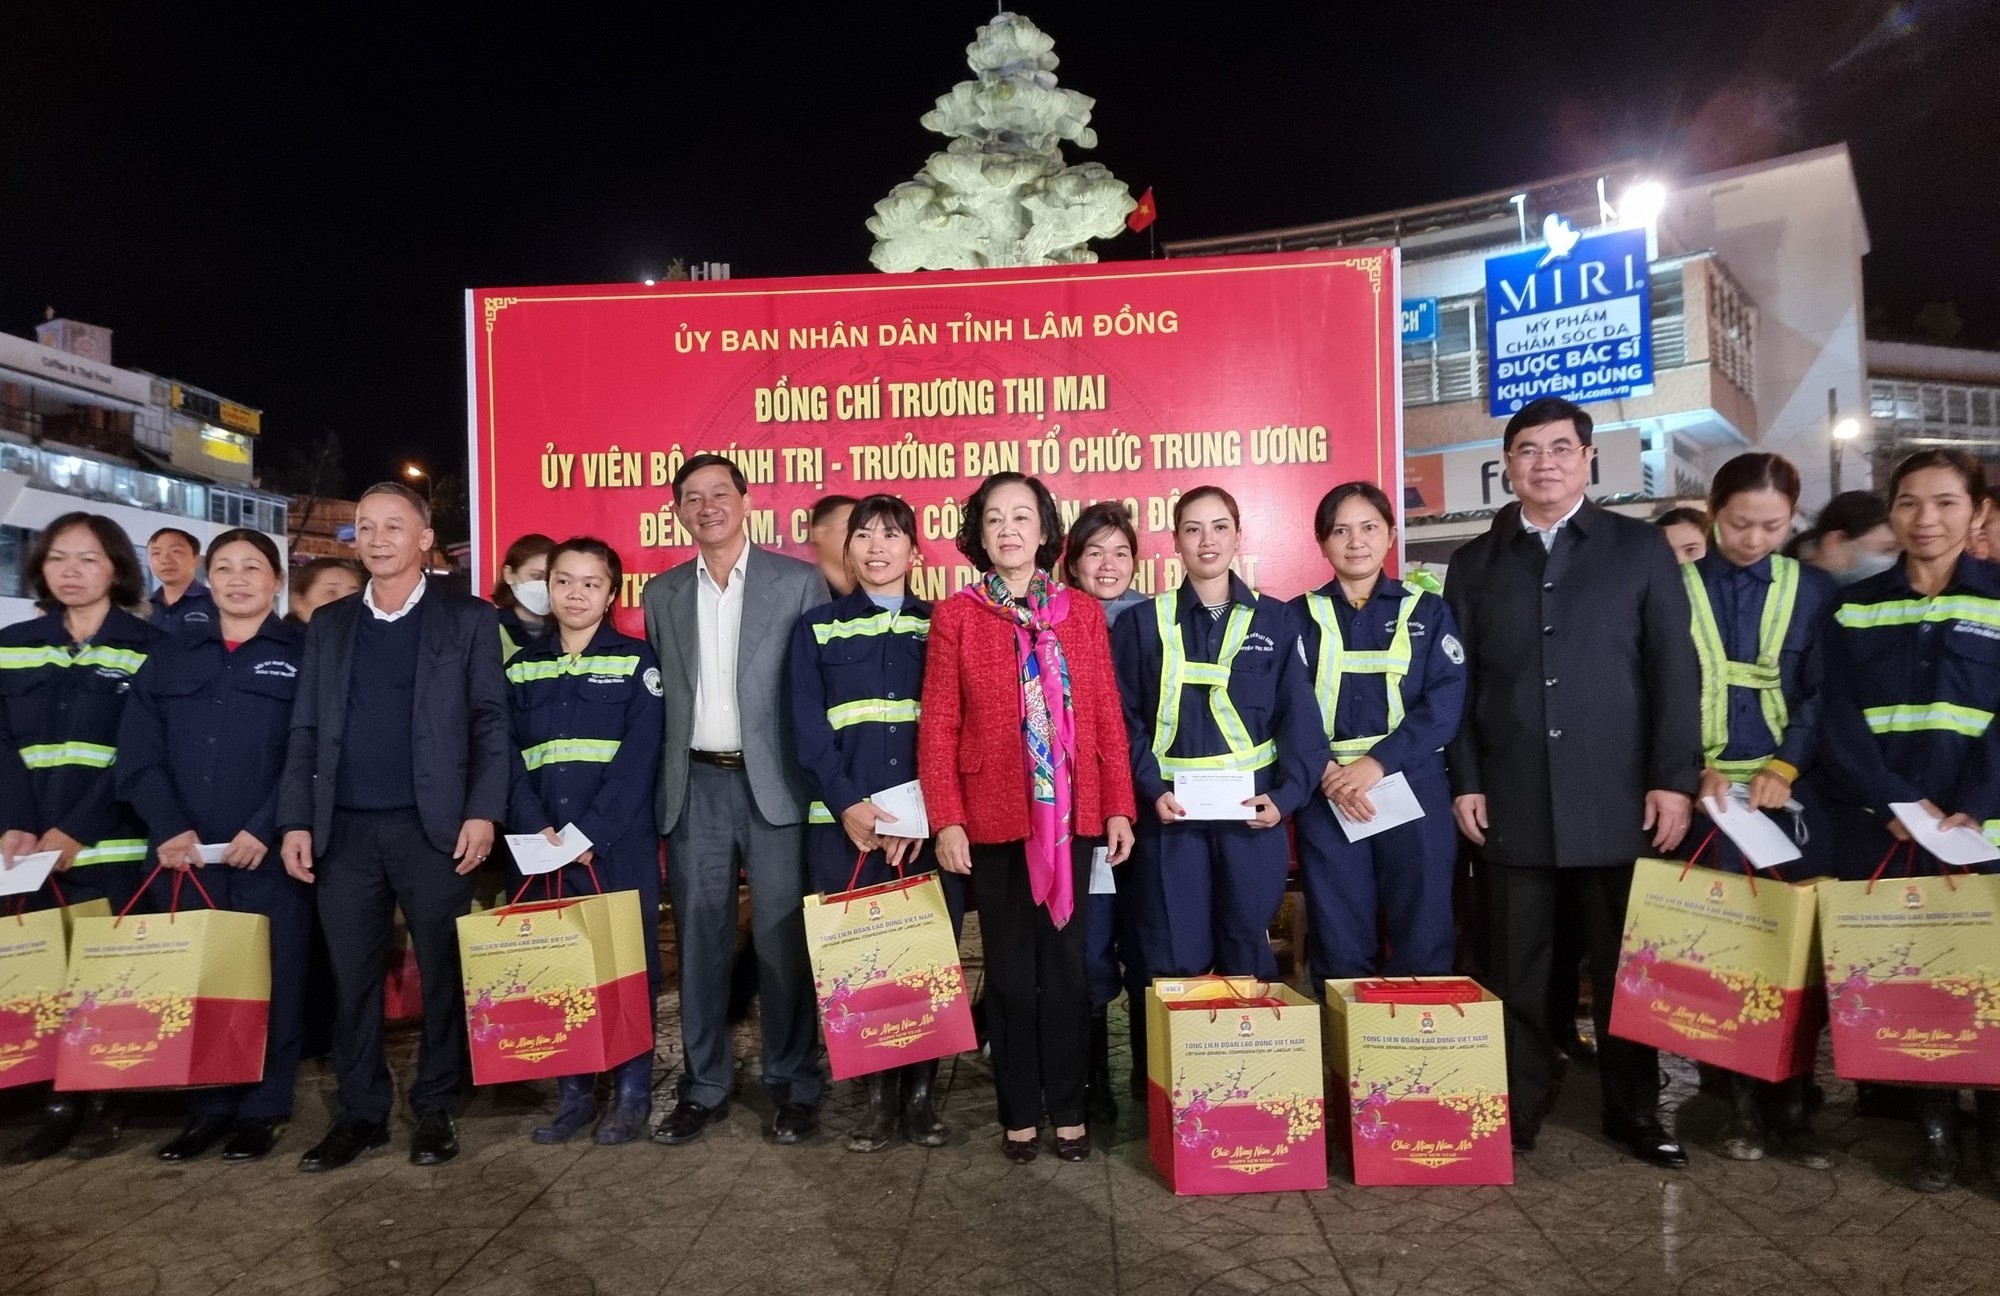 Bà Trương Thị Mai trao quà cho người lao động tại TP.Đà Lạt đêm 30 Tết - Ảnh 1.